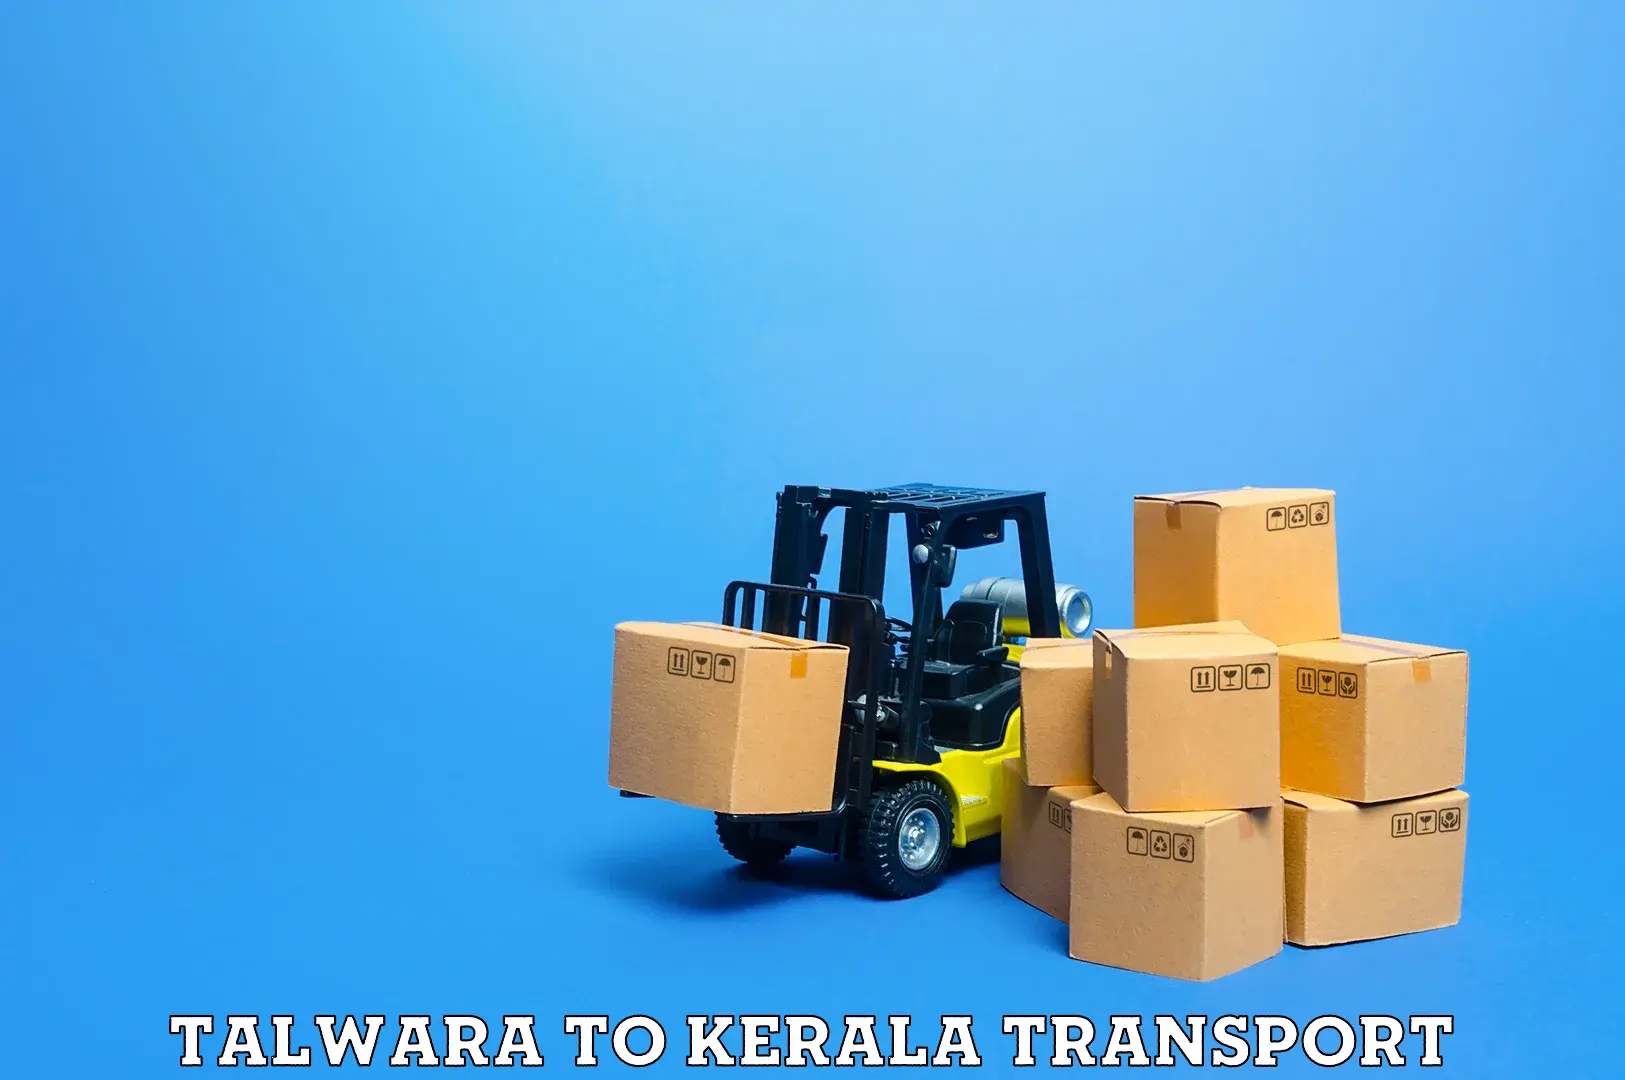 Express transport services Talwara to Kerala